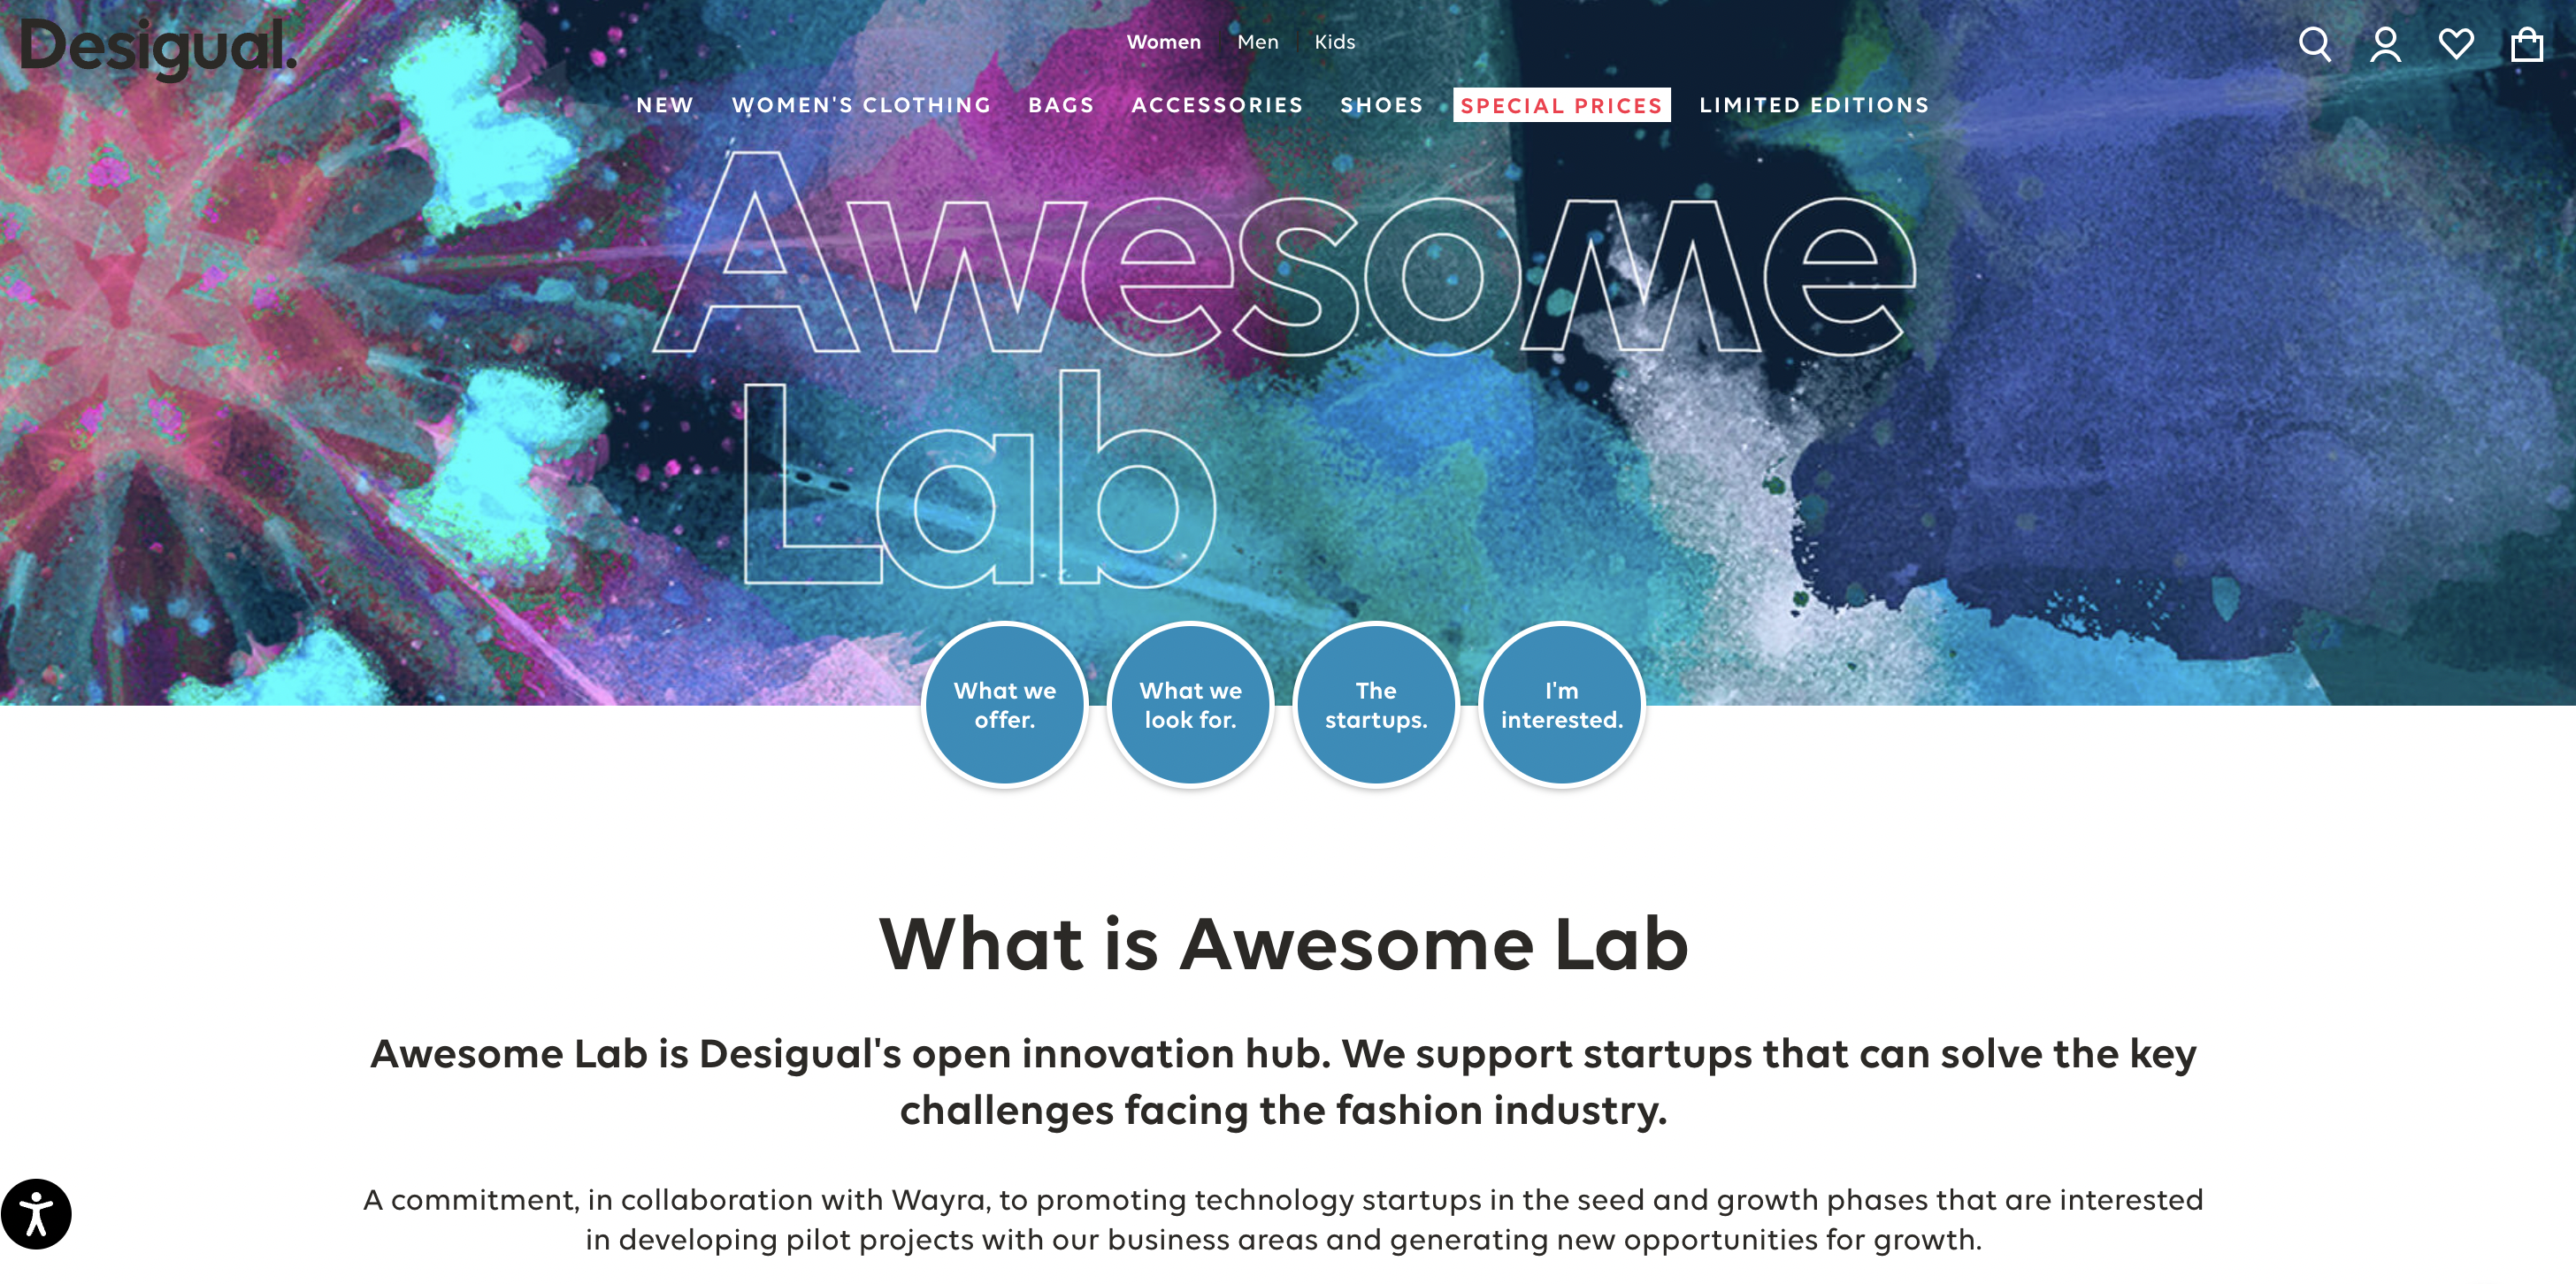 西班牙时尚品牌 Desigual 推出第二届 Awesome Lab 创业孵化器项目